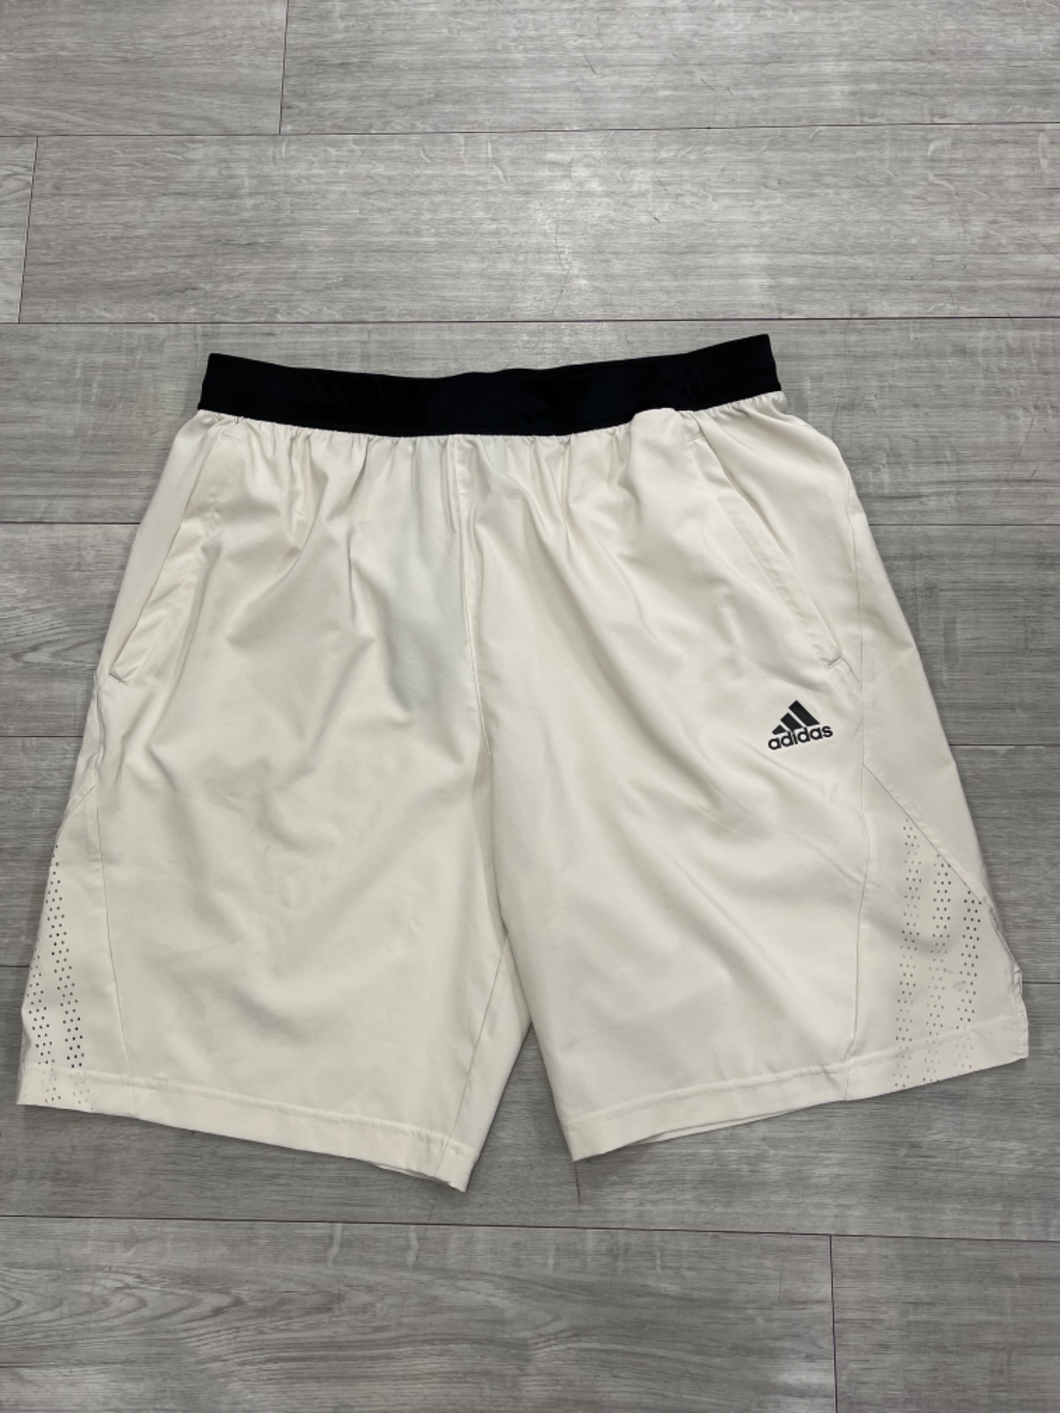 Adidas Athletic Shorts Size Large